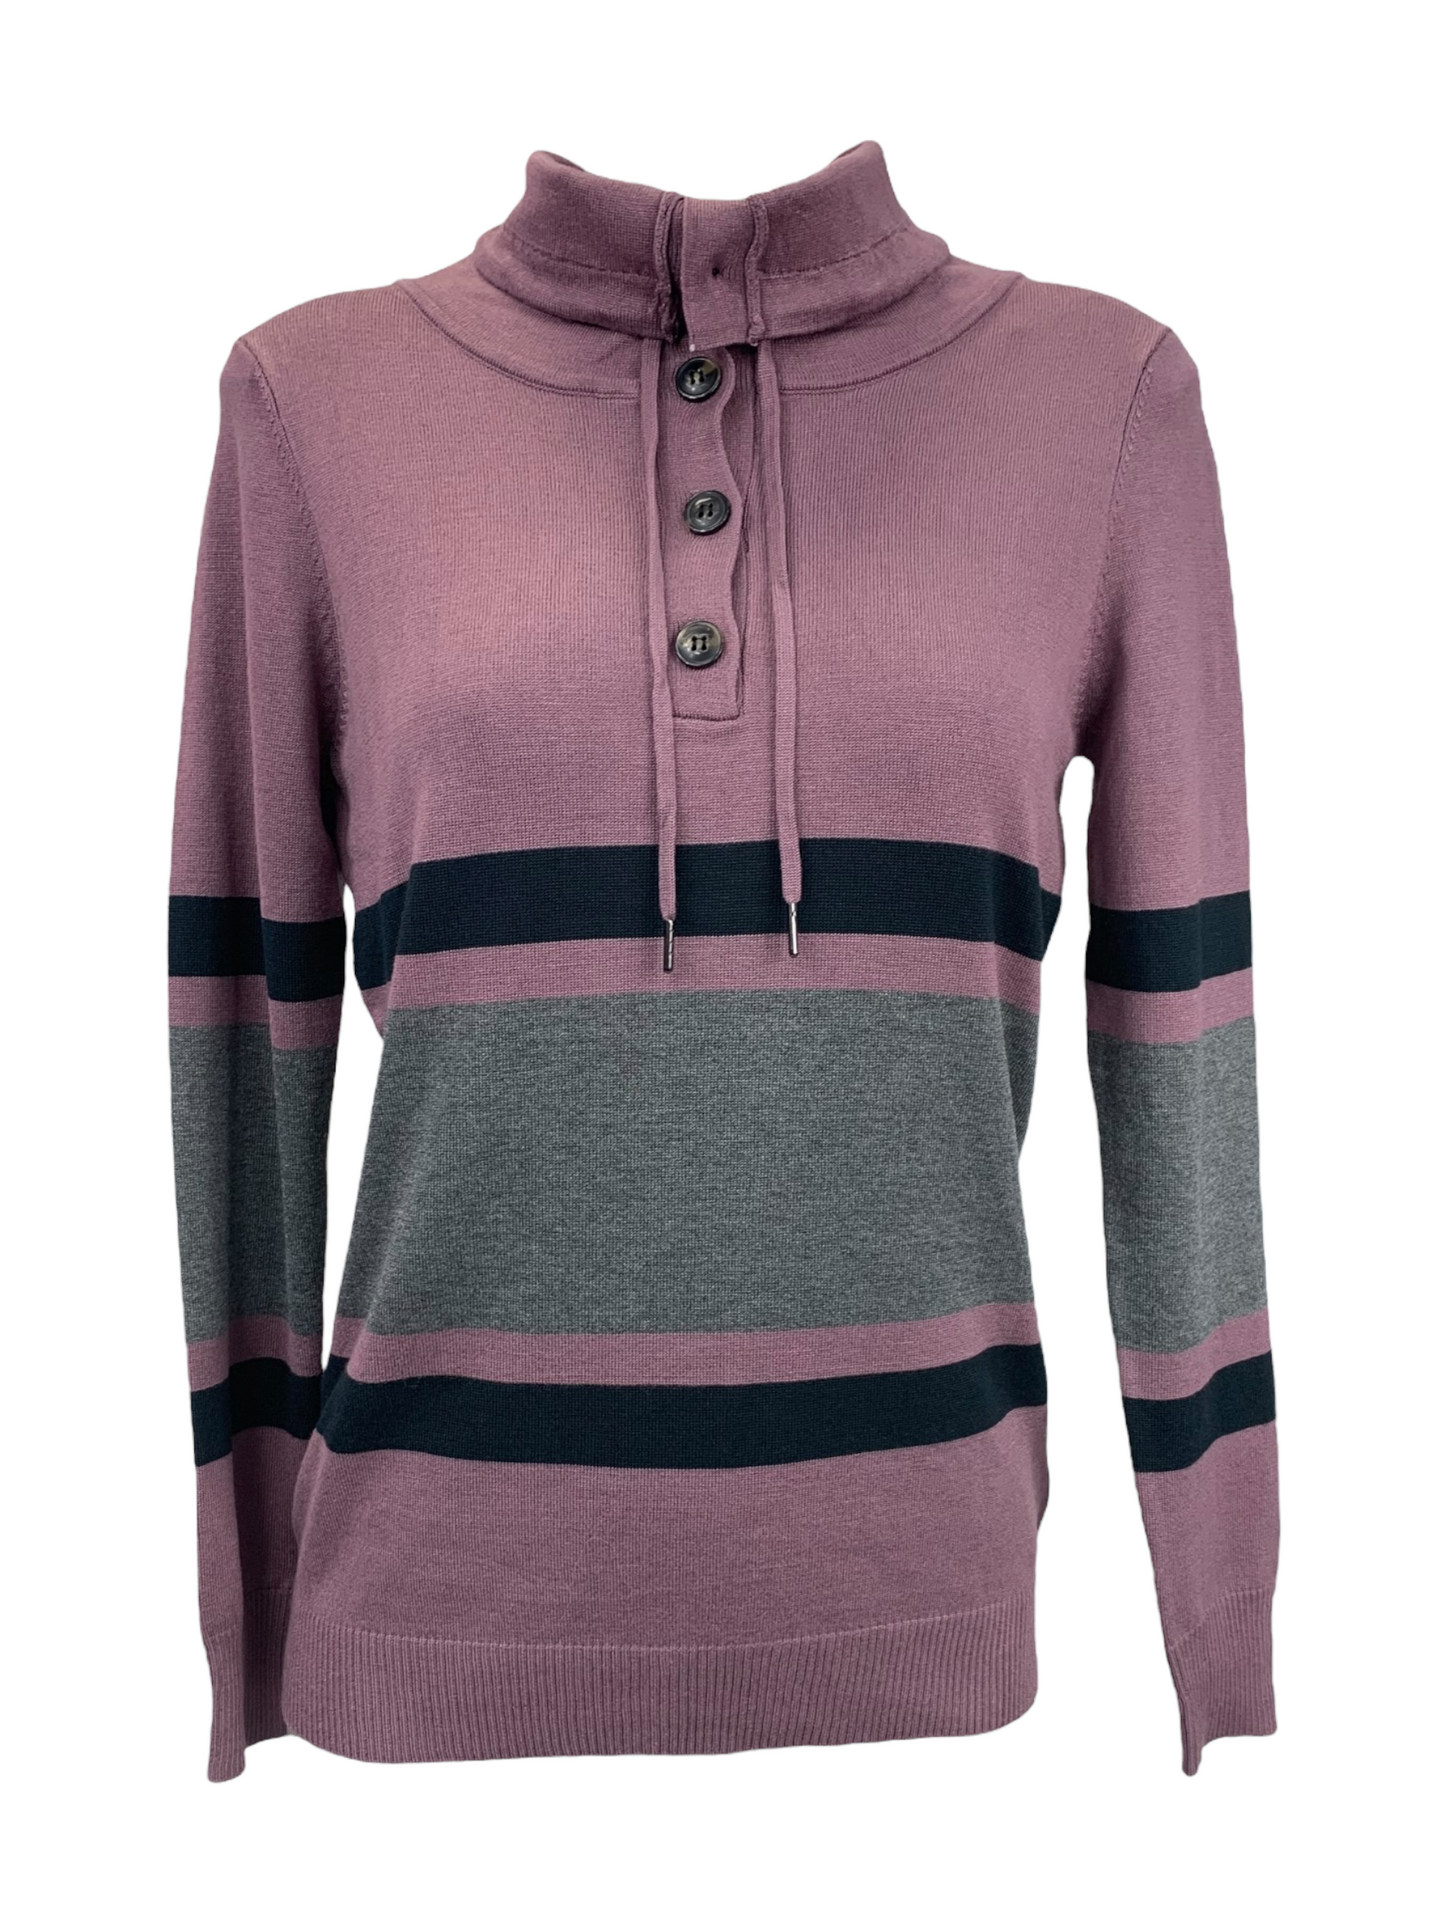 Women's Toi&Moi purple striped knit top